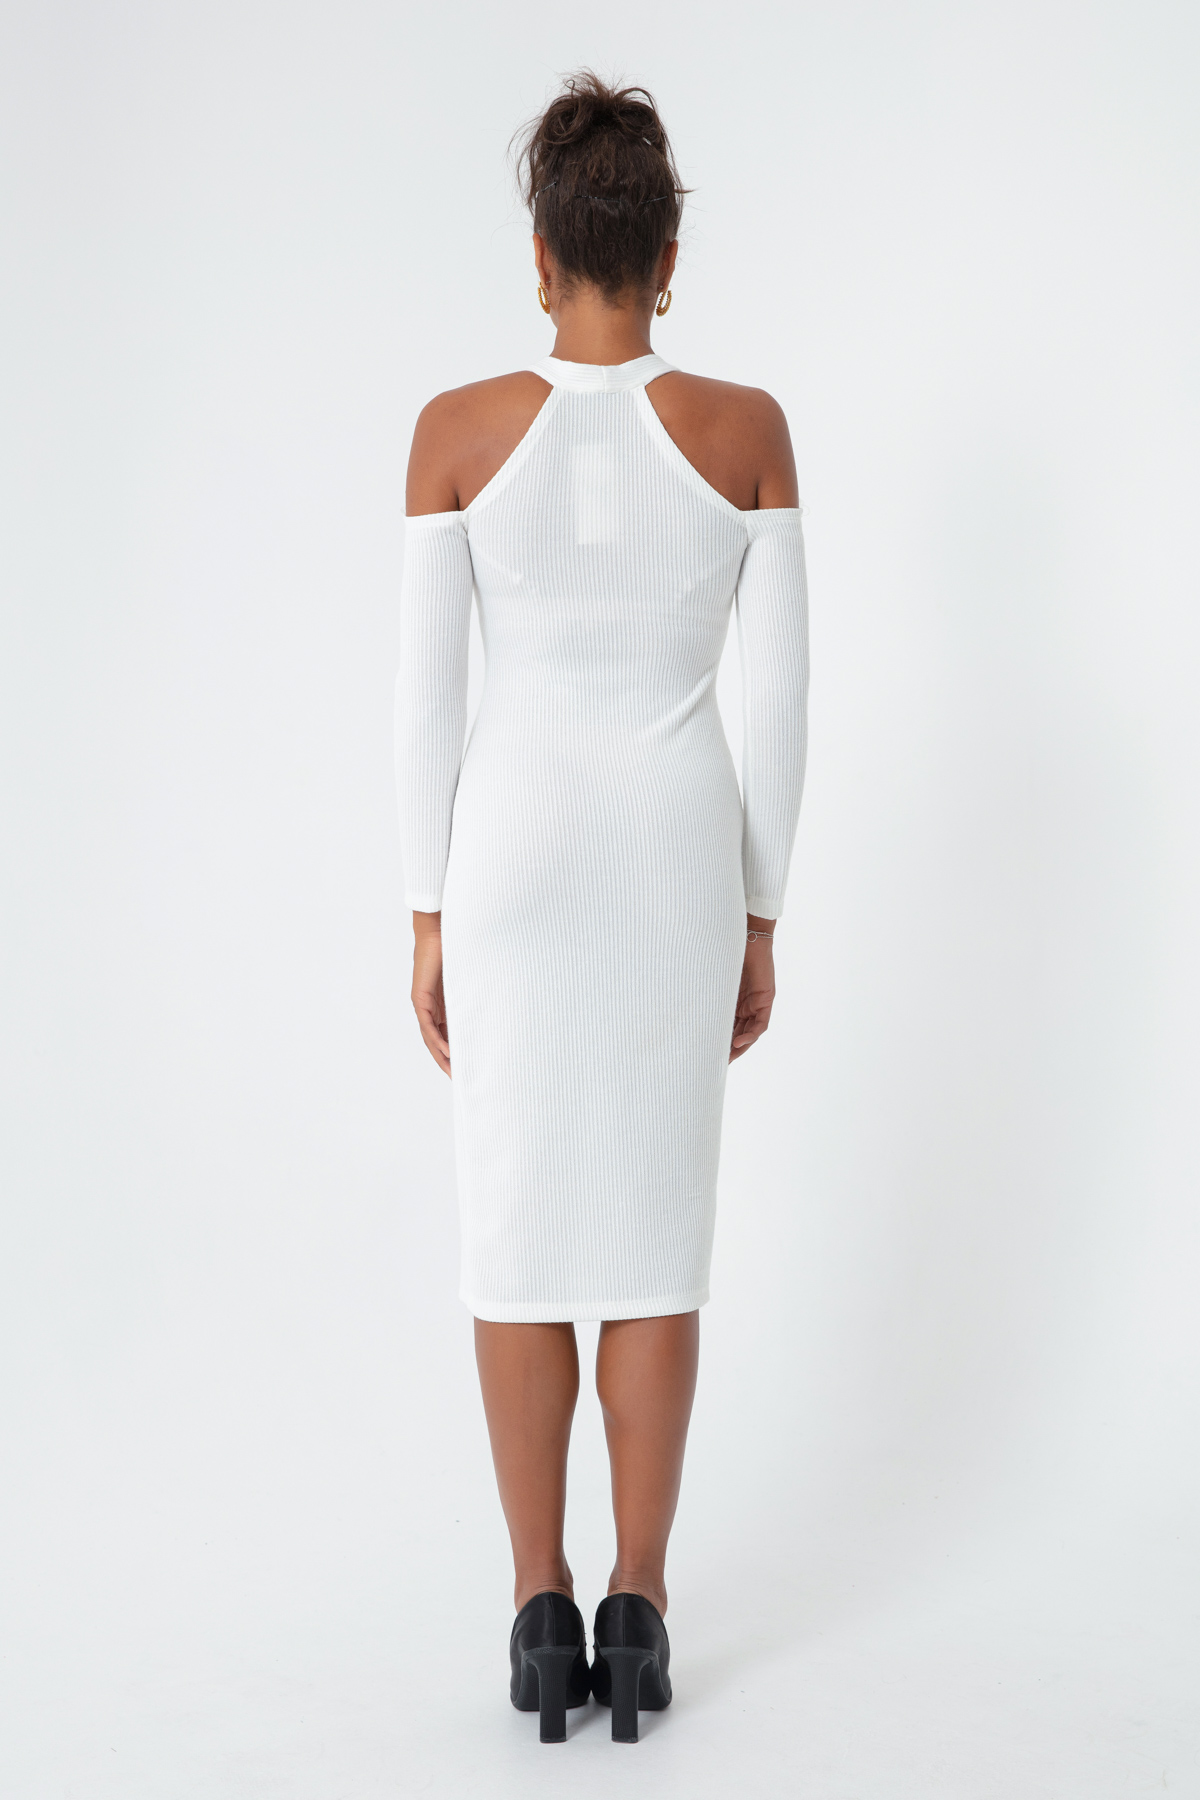 Women's White Knitted Dress